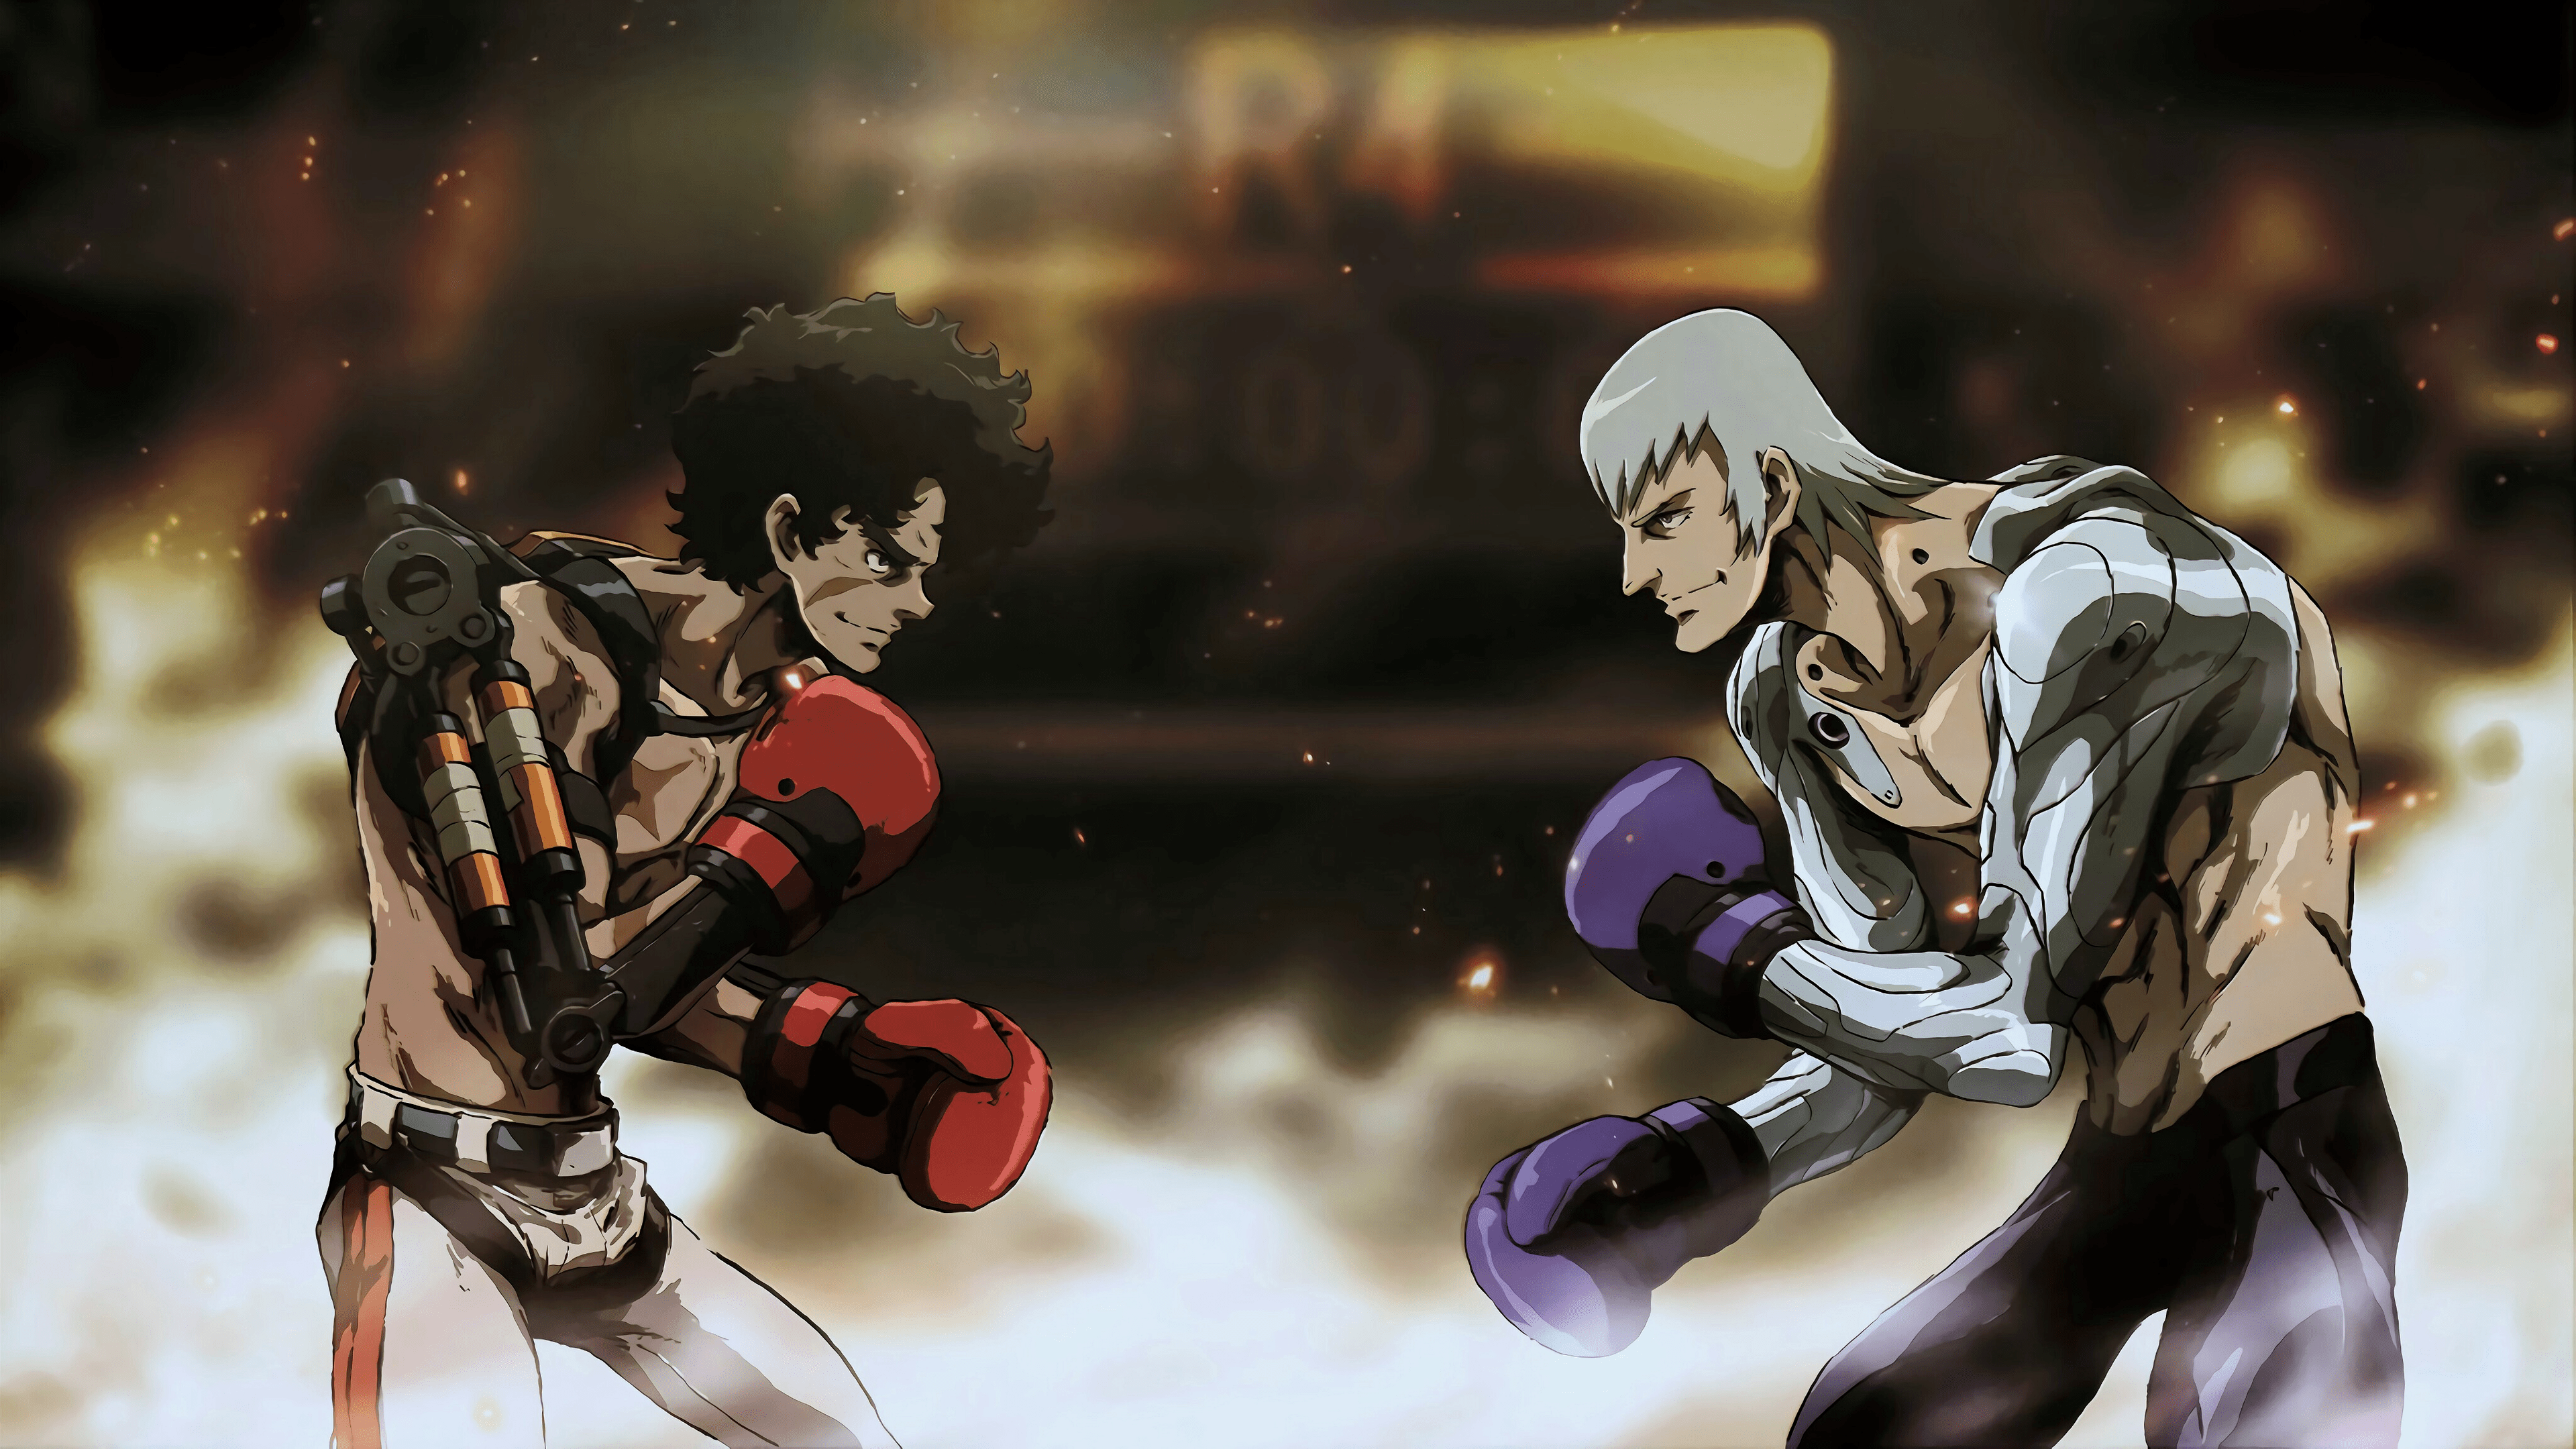 MEGALO BOX Joe MEGALO BOX Yuuri Megalo Box Anime Anime Boys Two Men Boxing Gloves Gloves Boxing Ring 3840x2160